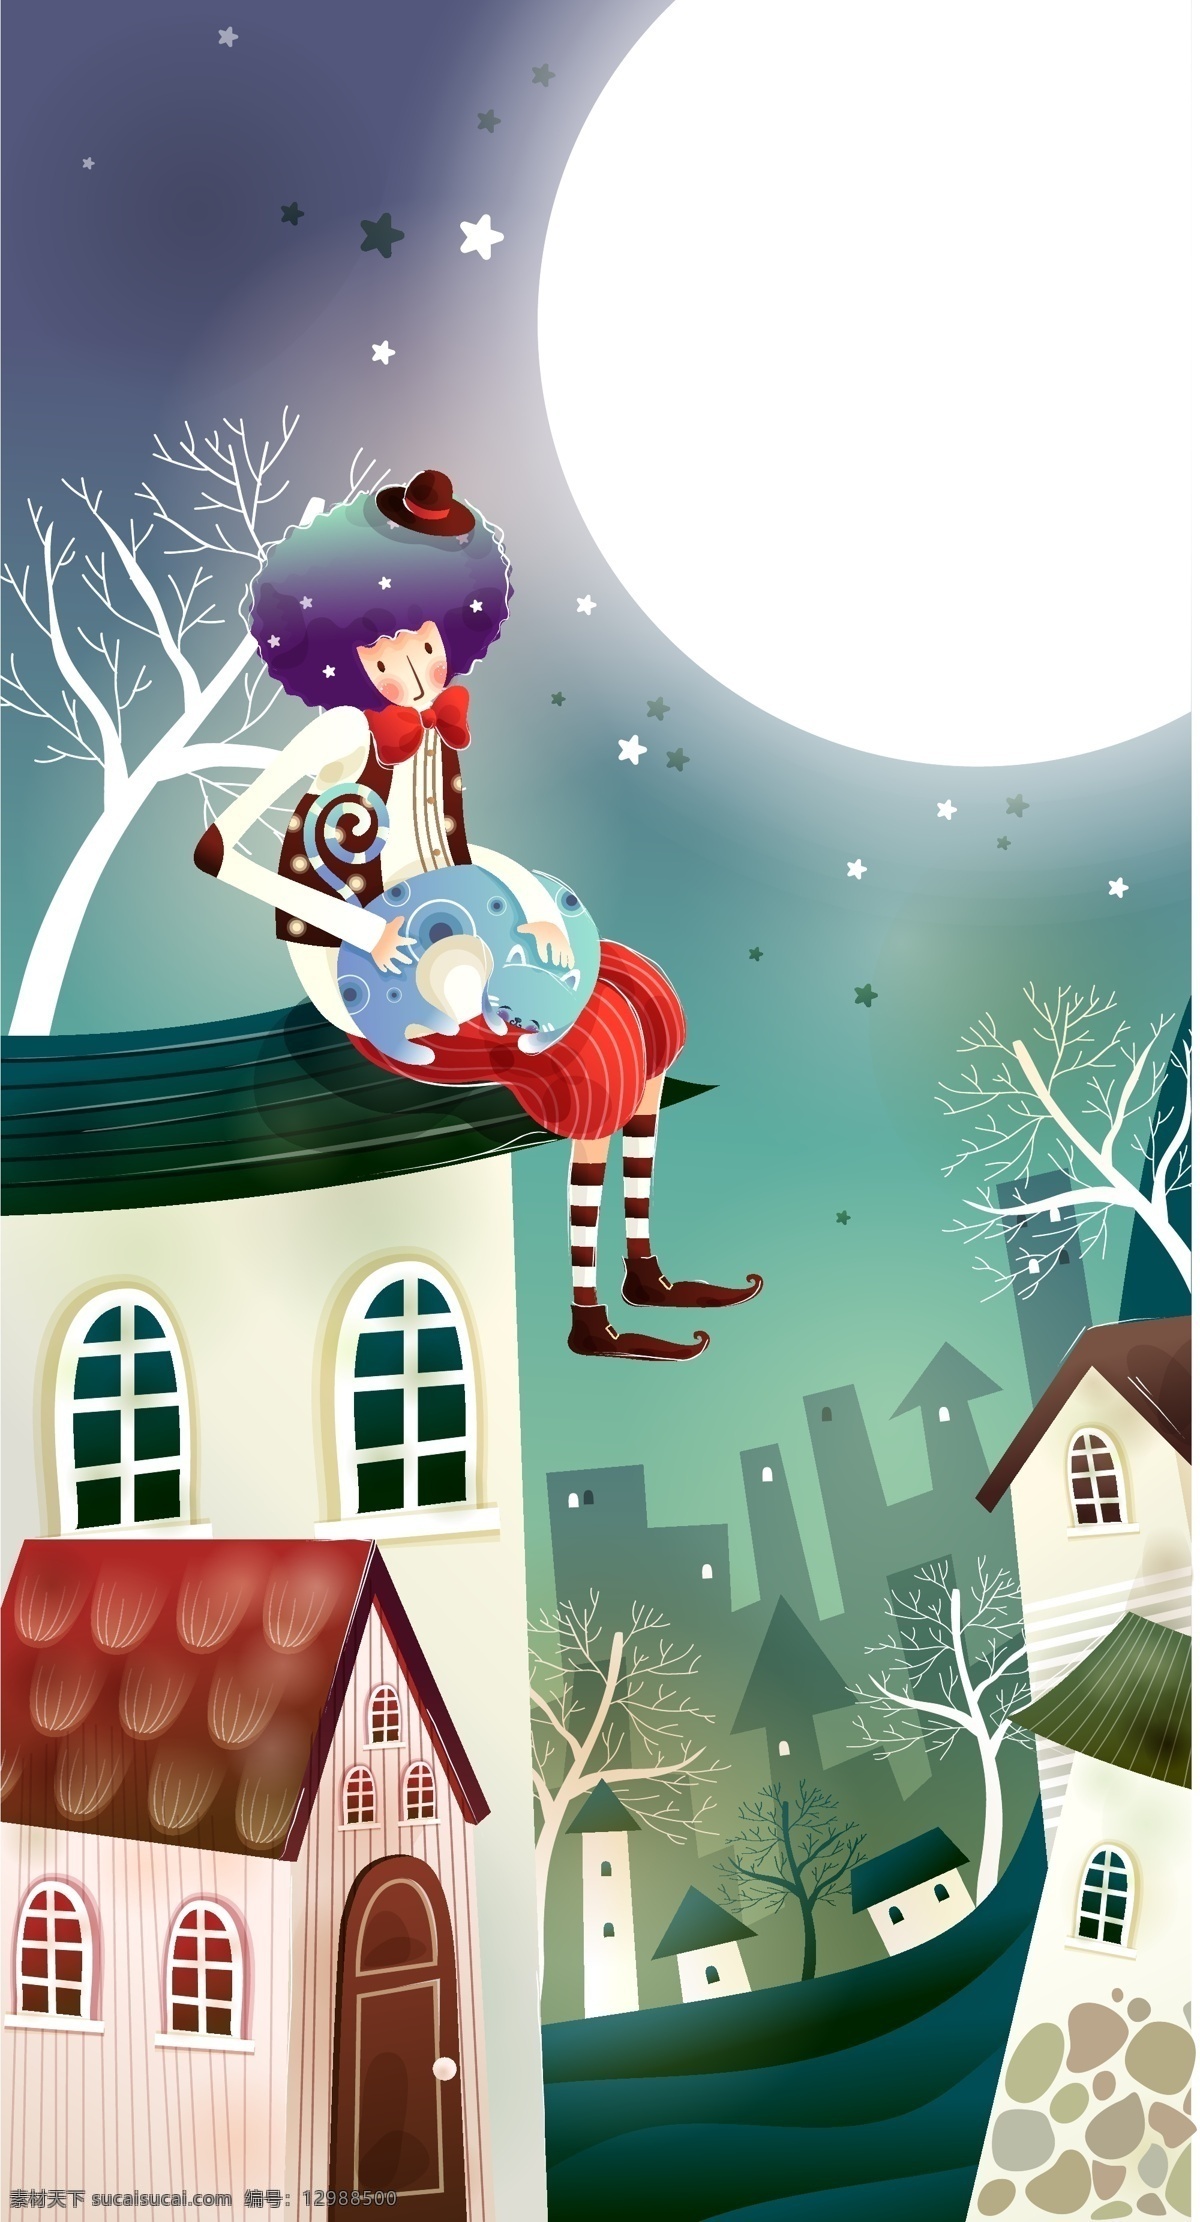 屋顶 上 孩子 插画 房子 童话 月亮 矢量图 矢量人物